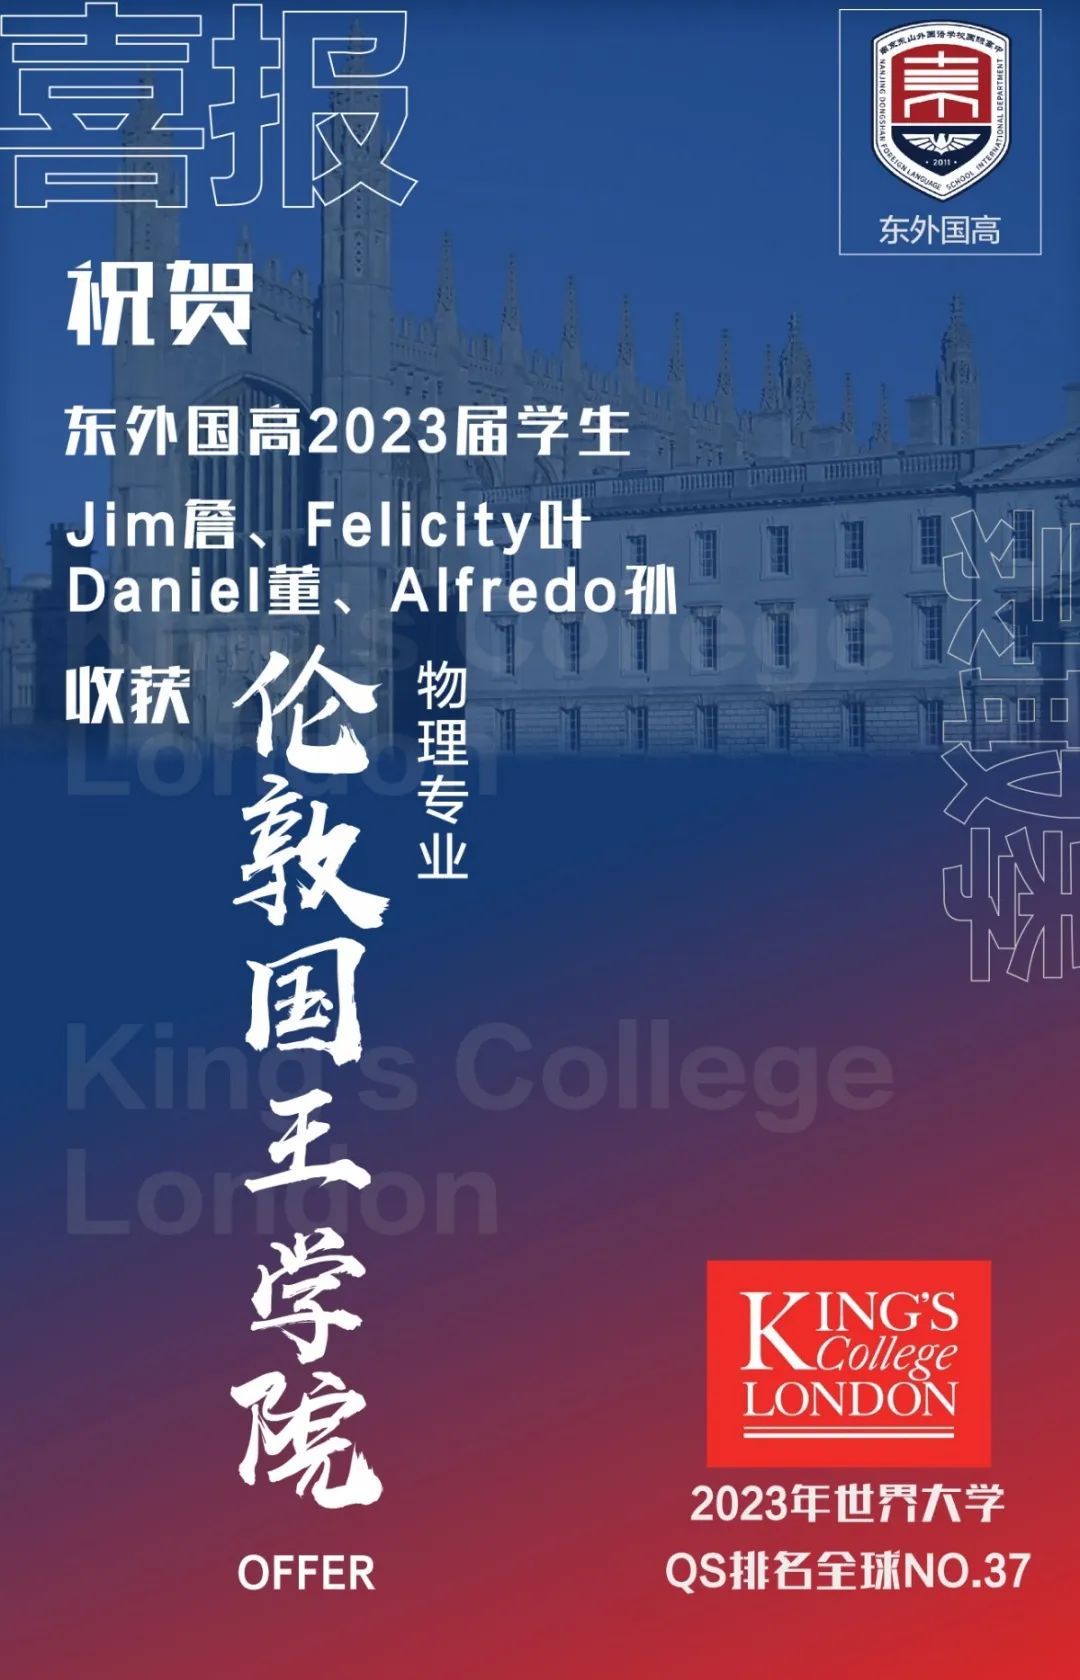 剑桥大学国际考评部贺南京东山外国语学校二十周年生日快乐！